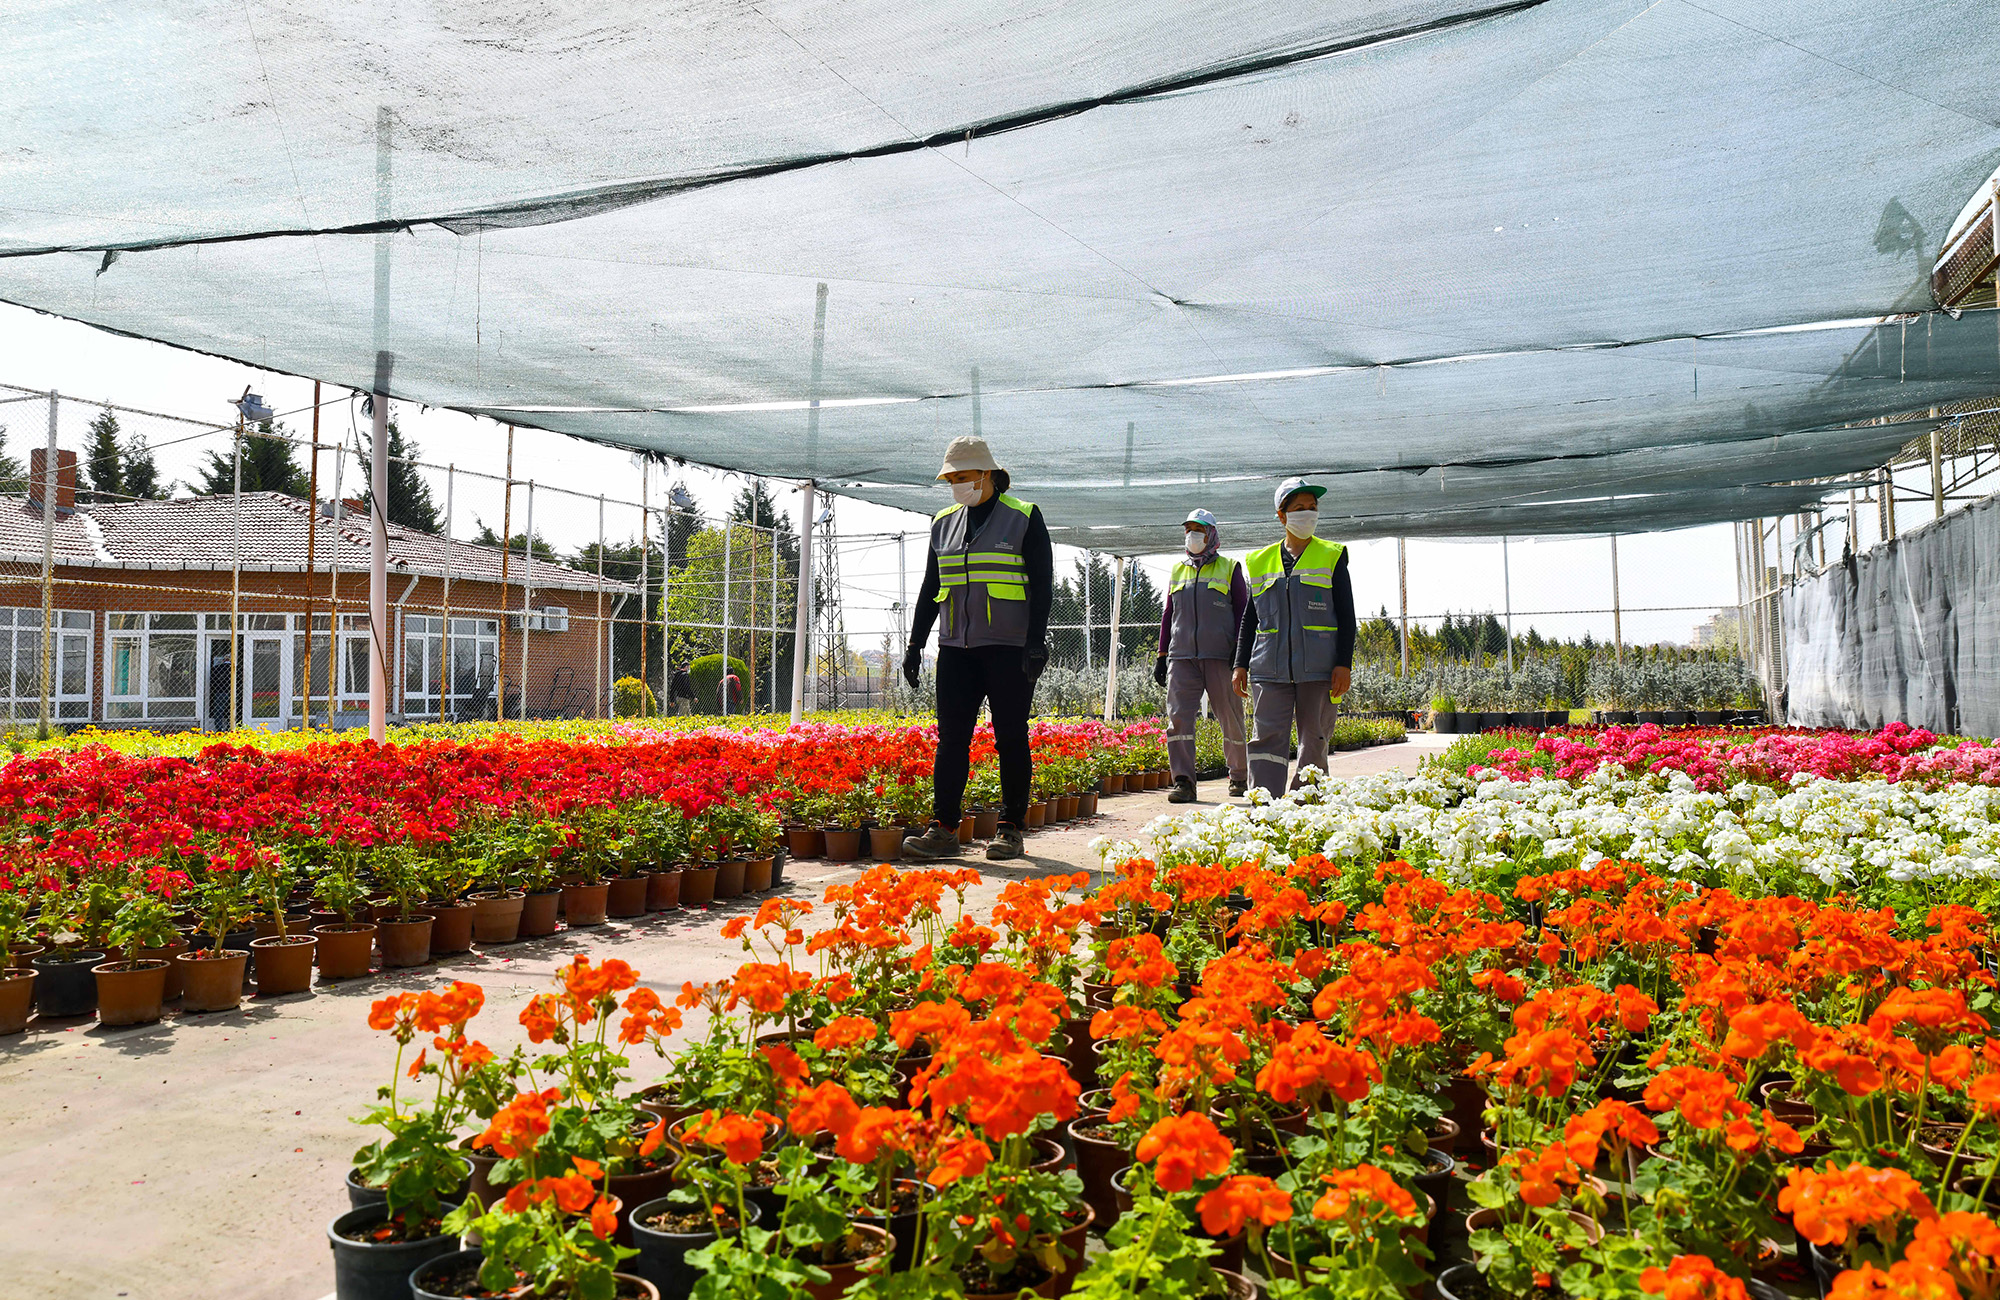  Tepebaşı Belediye Seralarında Yılda 200 Bin Çiçek Yetişiyor